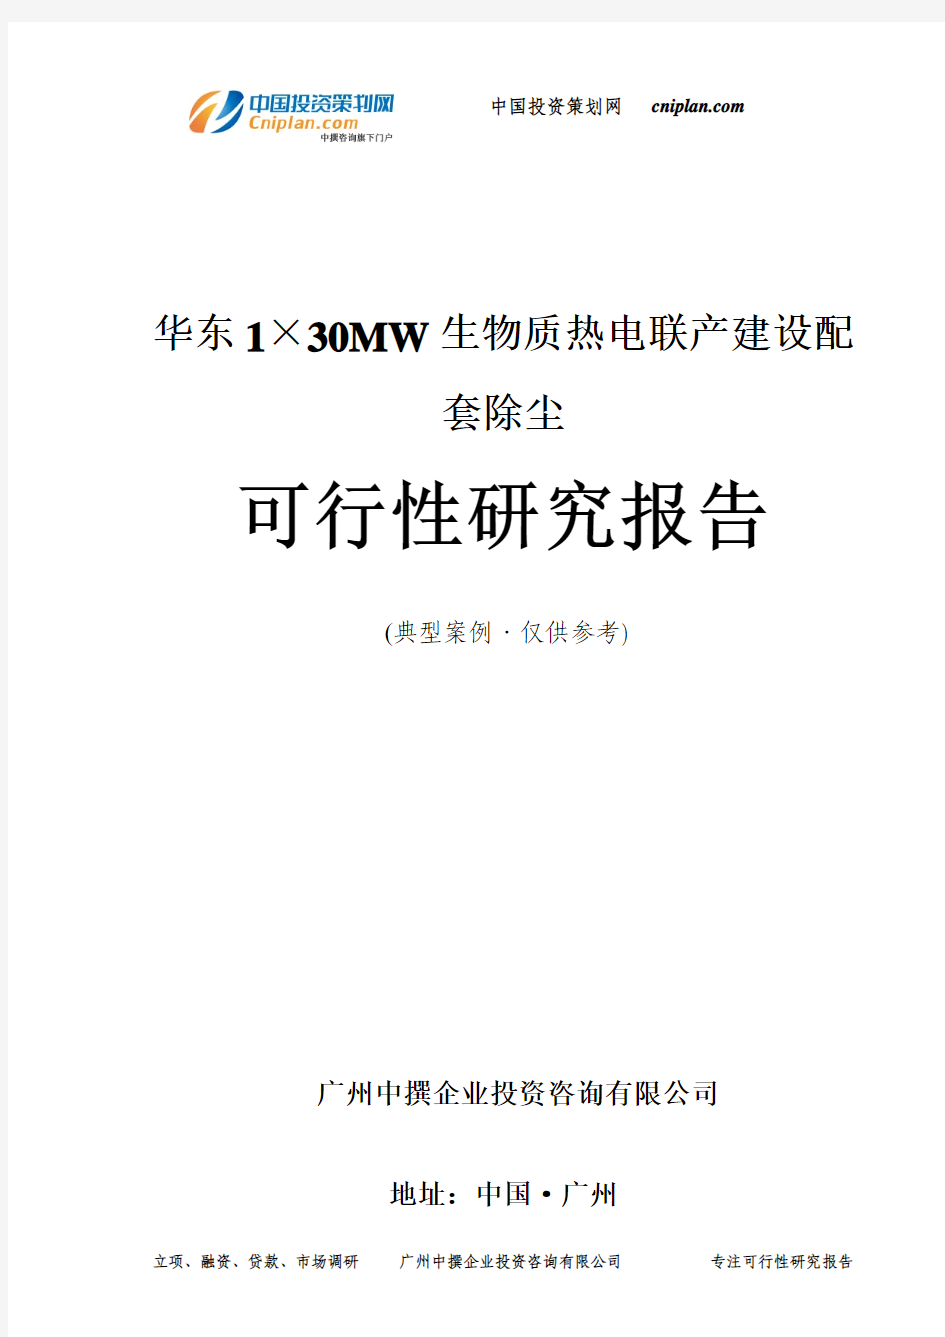 华东1×30MW生物质热电联产建设配套除尘可行性研究报告-广州中撰咨询